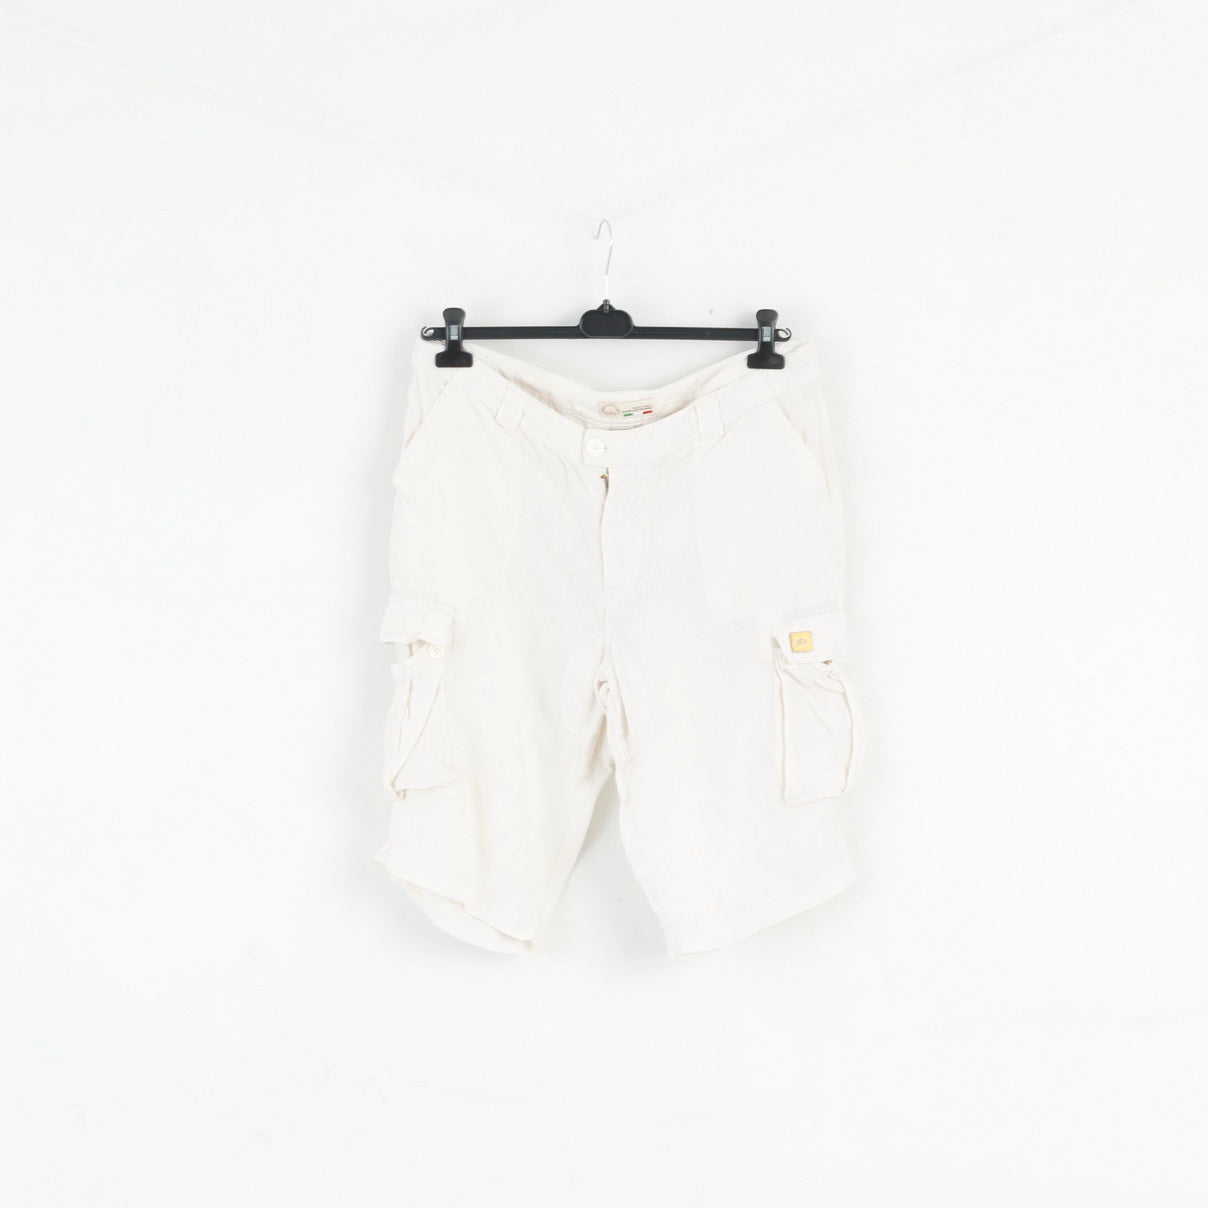 Acquafredda Mens 54 XL Shorts Beige 100% Linen Made in Italy Summer